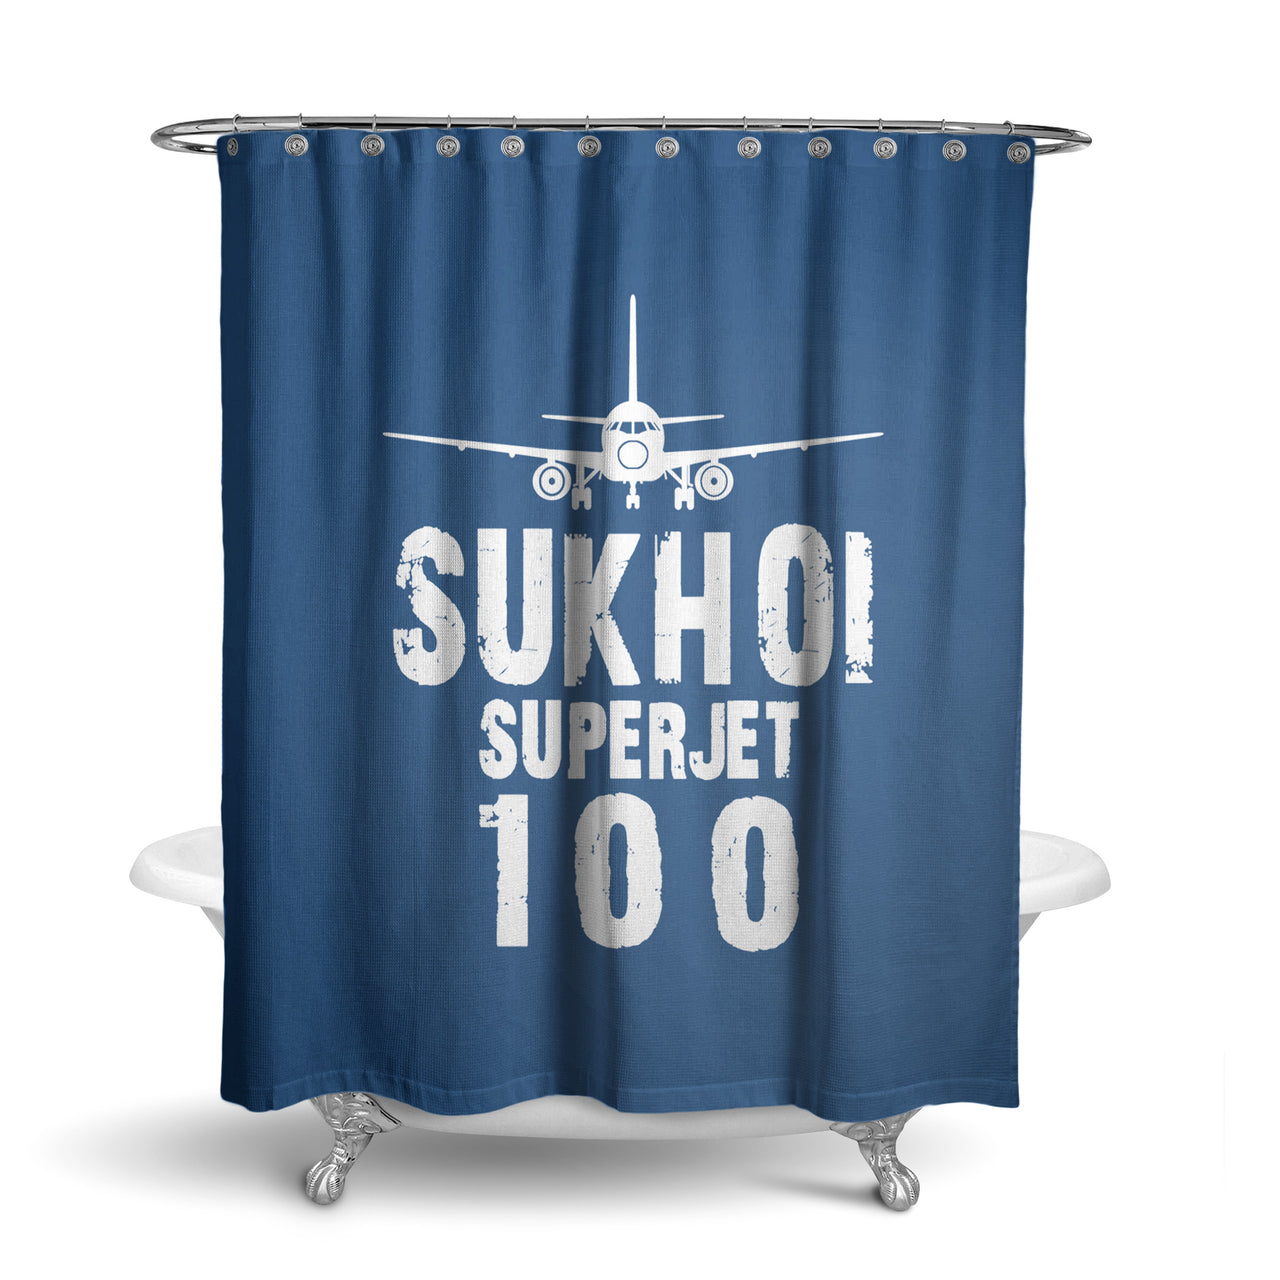 Sukhoi Superjet 100 & Plane Designed Shower Curtains